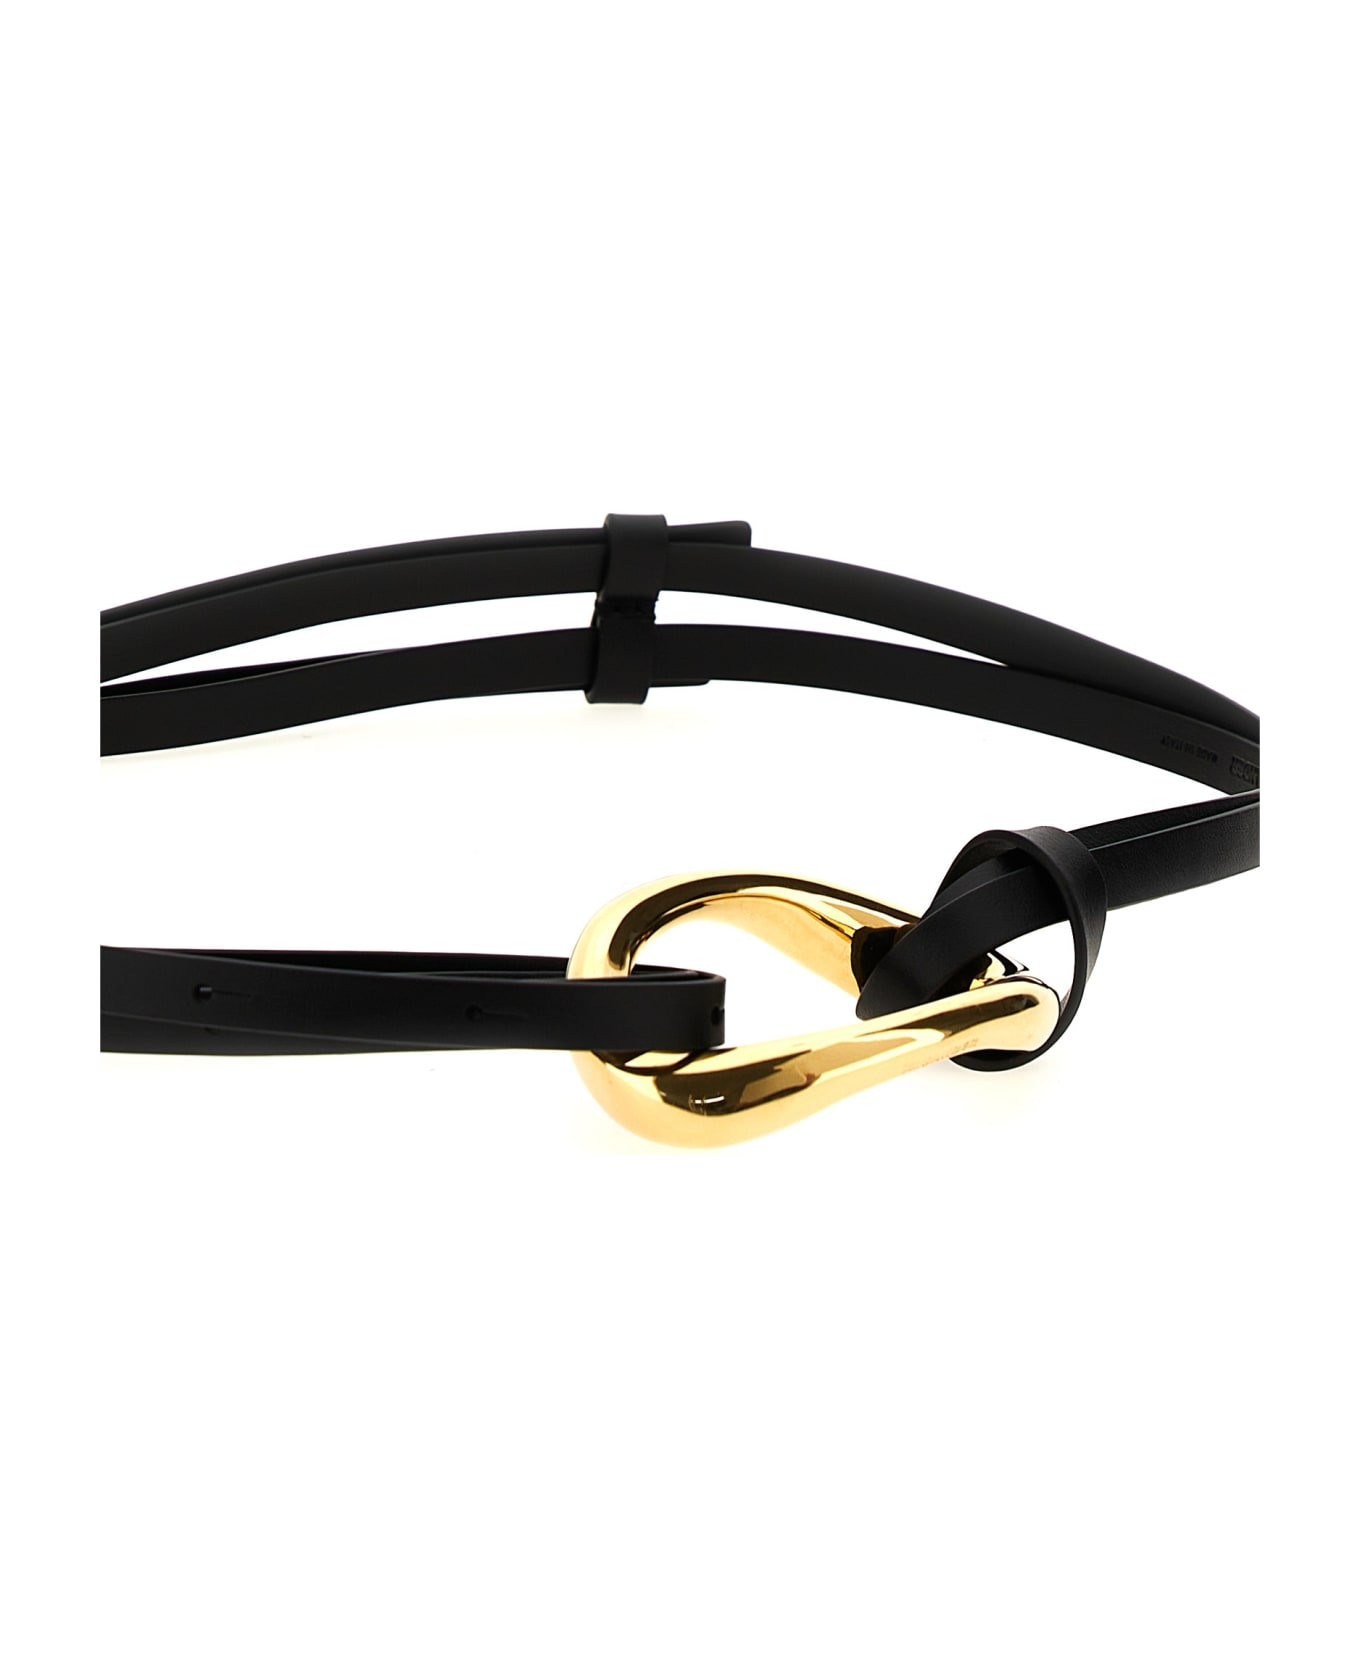 Jil Sander Leather Belt - Black   ベルト